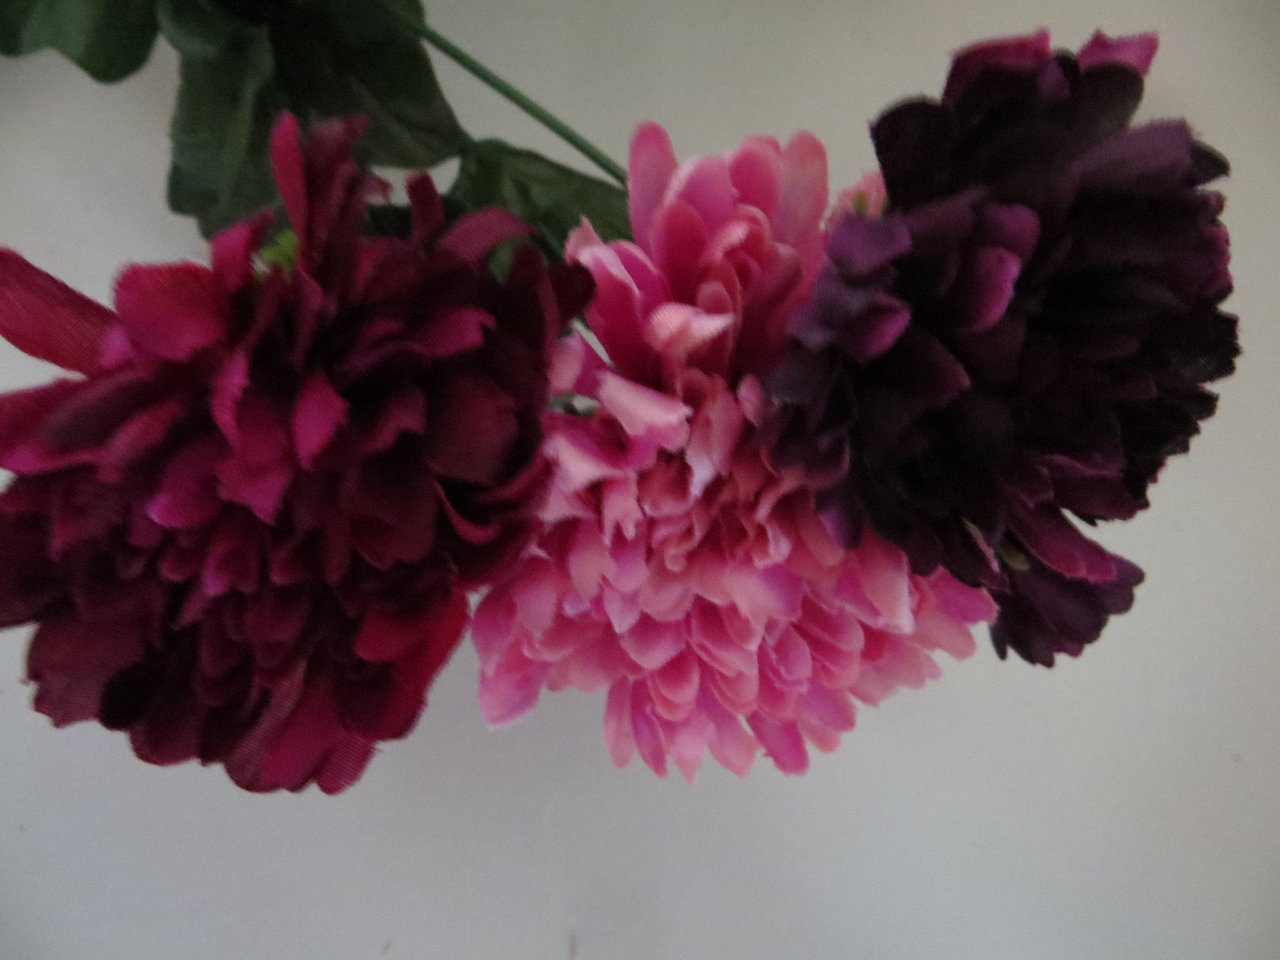 Chrysanthemenstrauß mit 36 Stielen, 36 großen Blüten und 16 kleinen Blüten Farbe: altrosa/bord/viol.